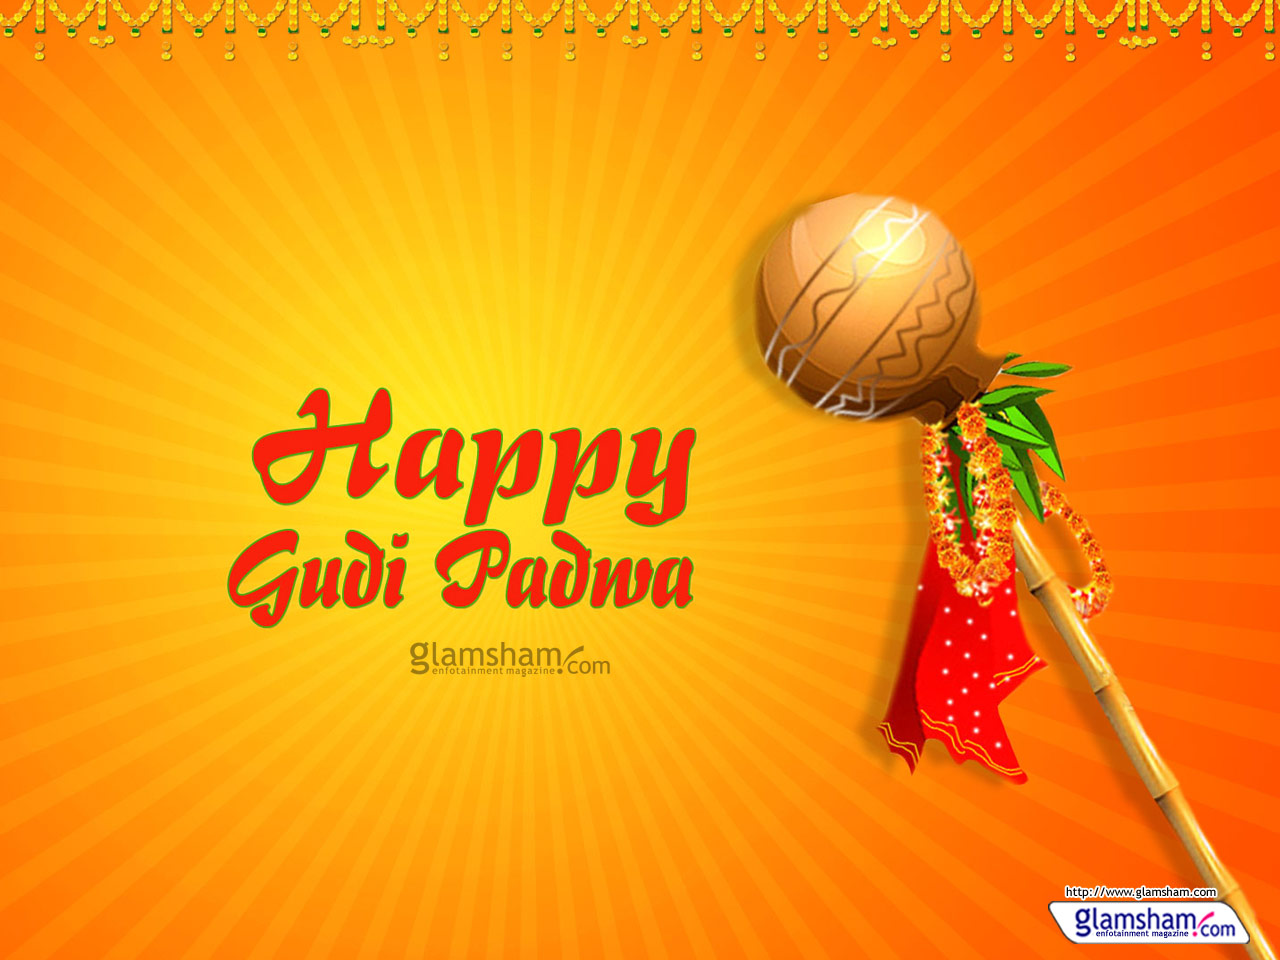 Gudi Padwa Wallpaper - Gudi Padwa Images Hd , HD Wallpaper & Backgrounds